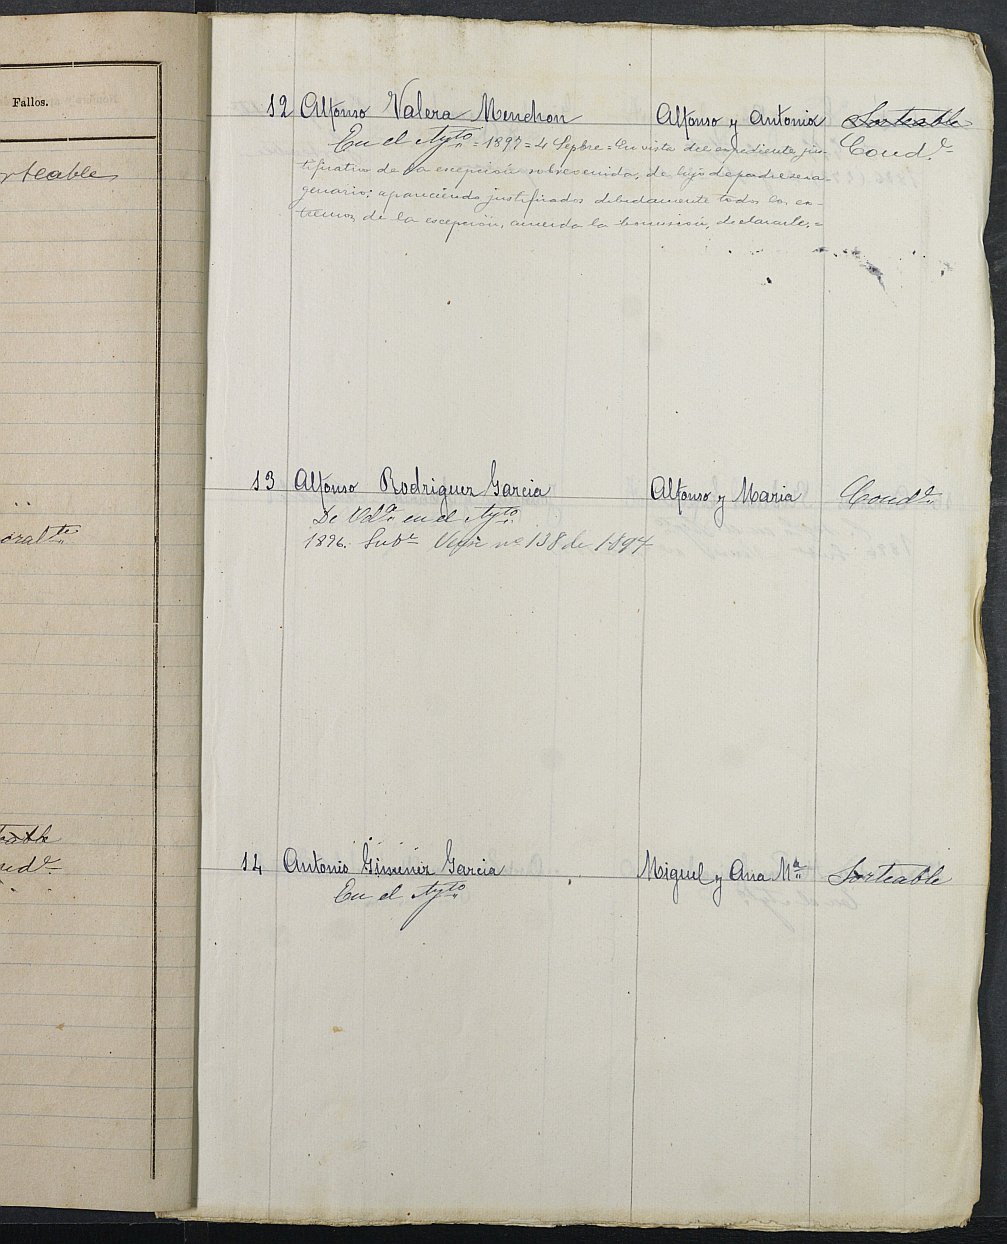 Relación de individuos declarados soldados e ingresados en Caja del Ayuntamiento de Bullas de 1895.